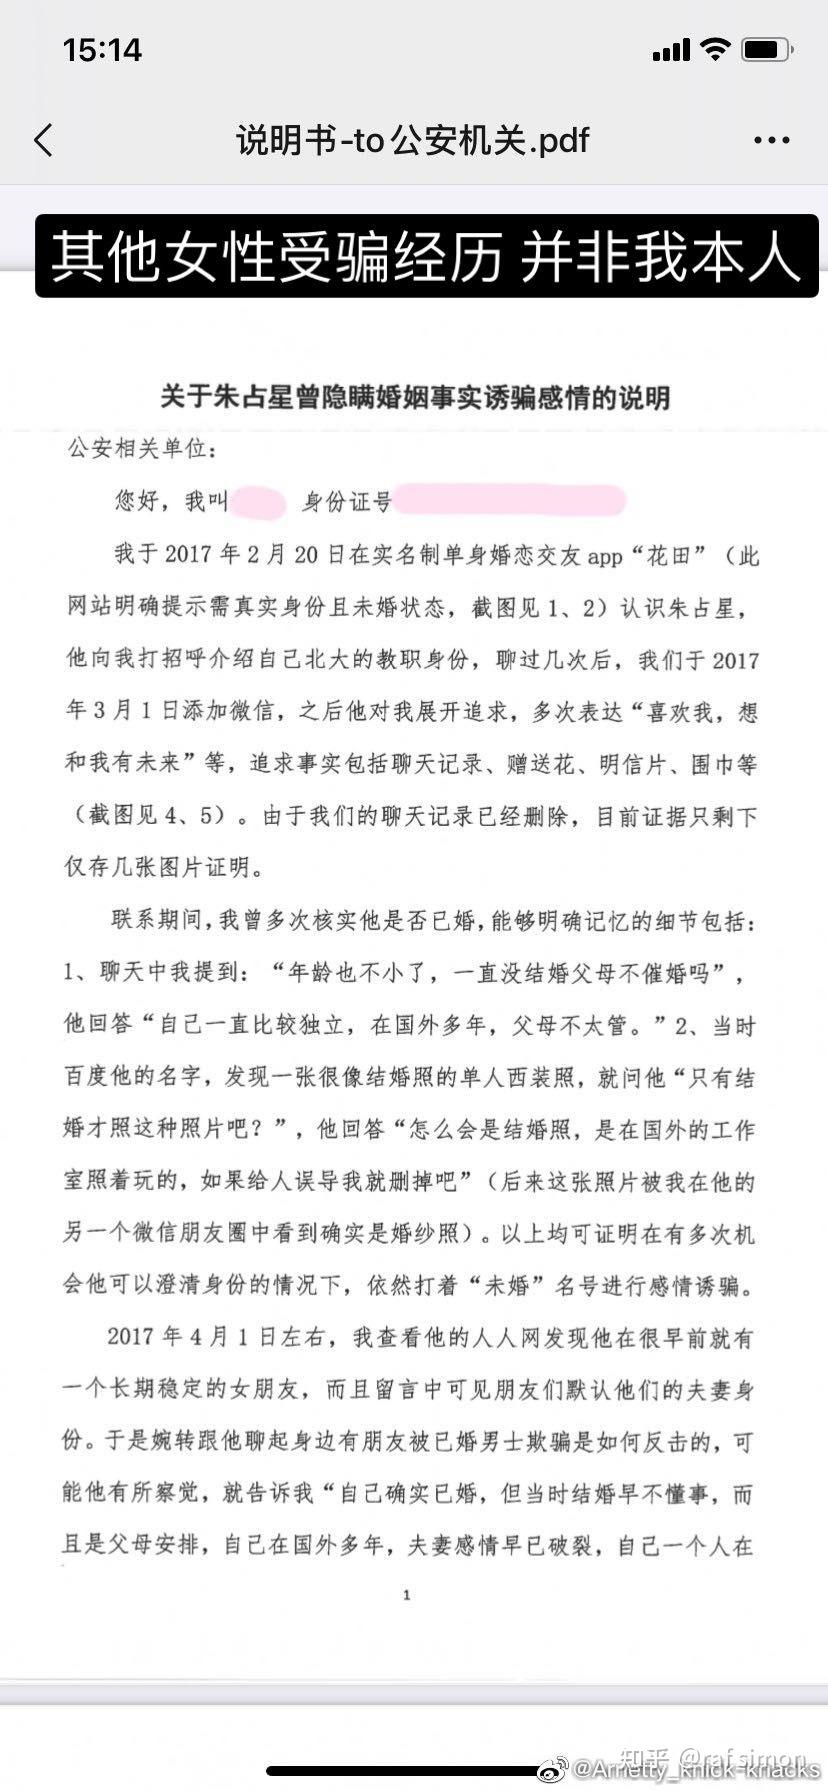 朱占星,北京大学数学科学学院助理教授,涉嫌猥亵,性骚扰